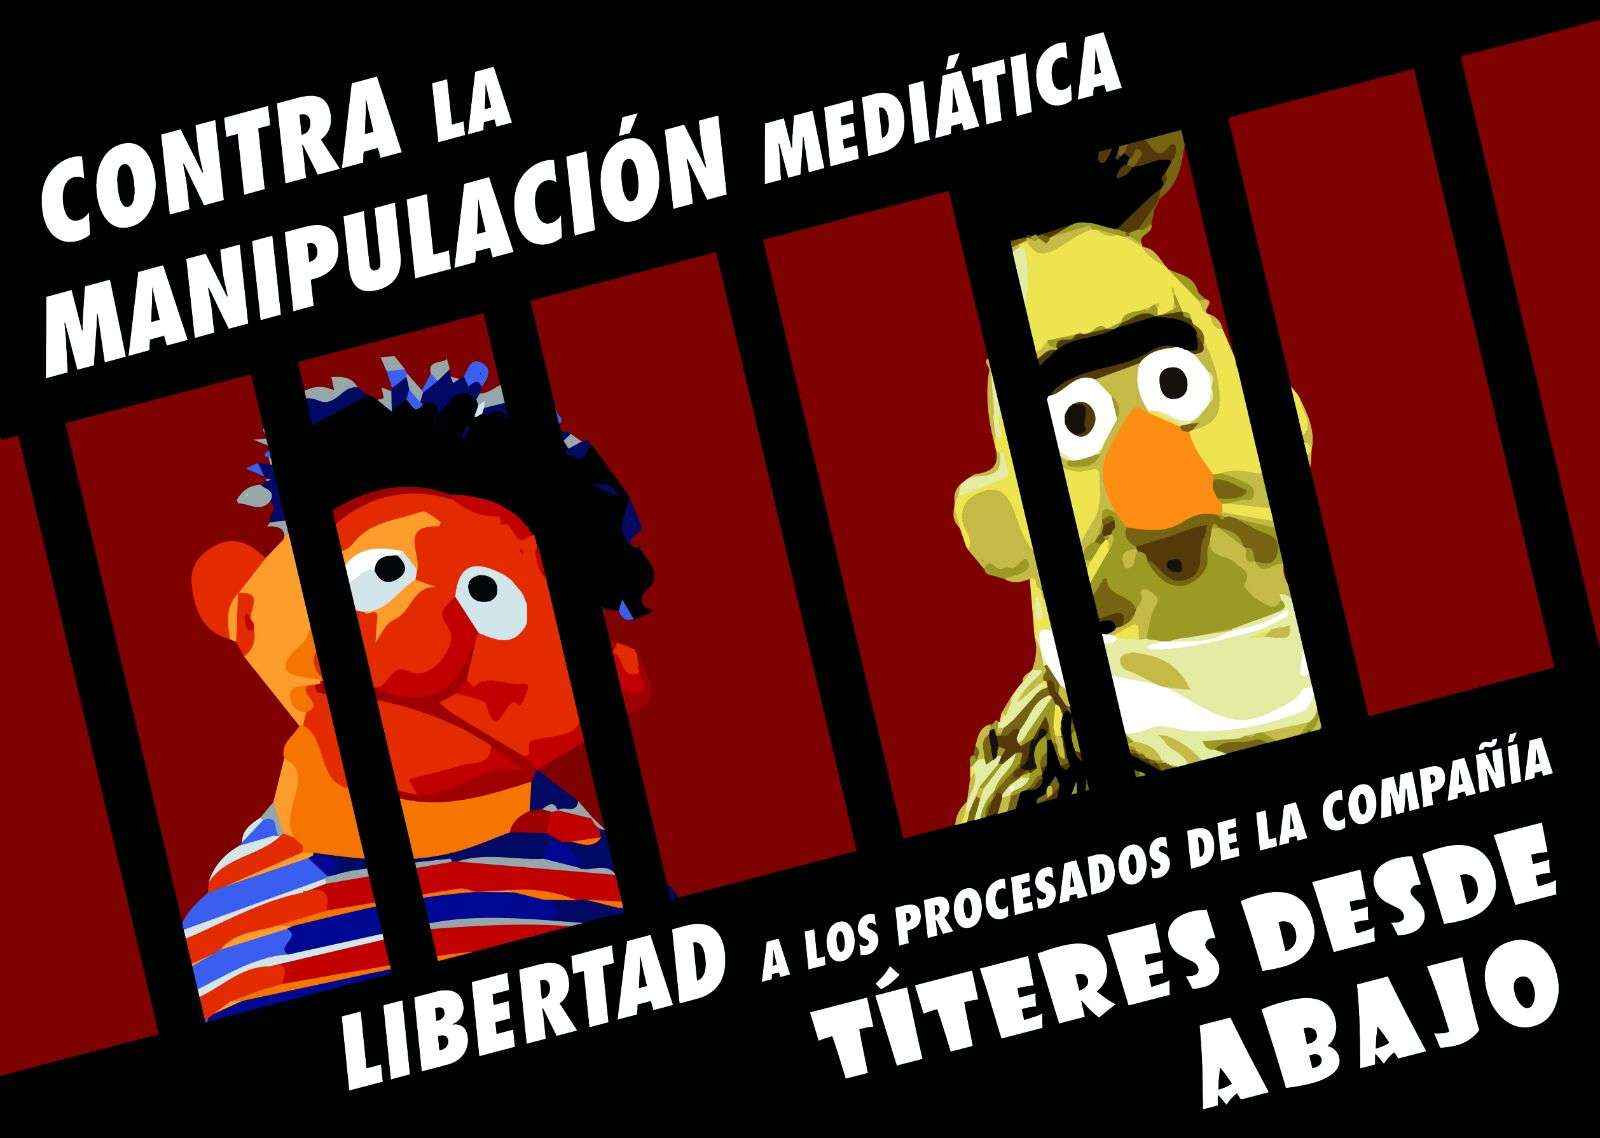 Για τη σύλληψη δύο μαριονετιστών από την συλλογικότητα «Títeres desde Abajo» στη Μαδρίτη